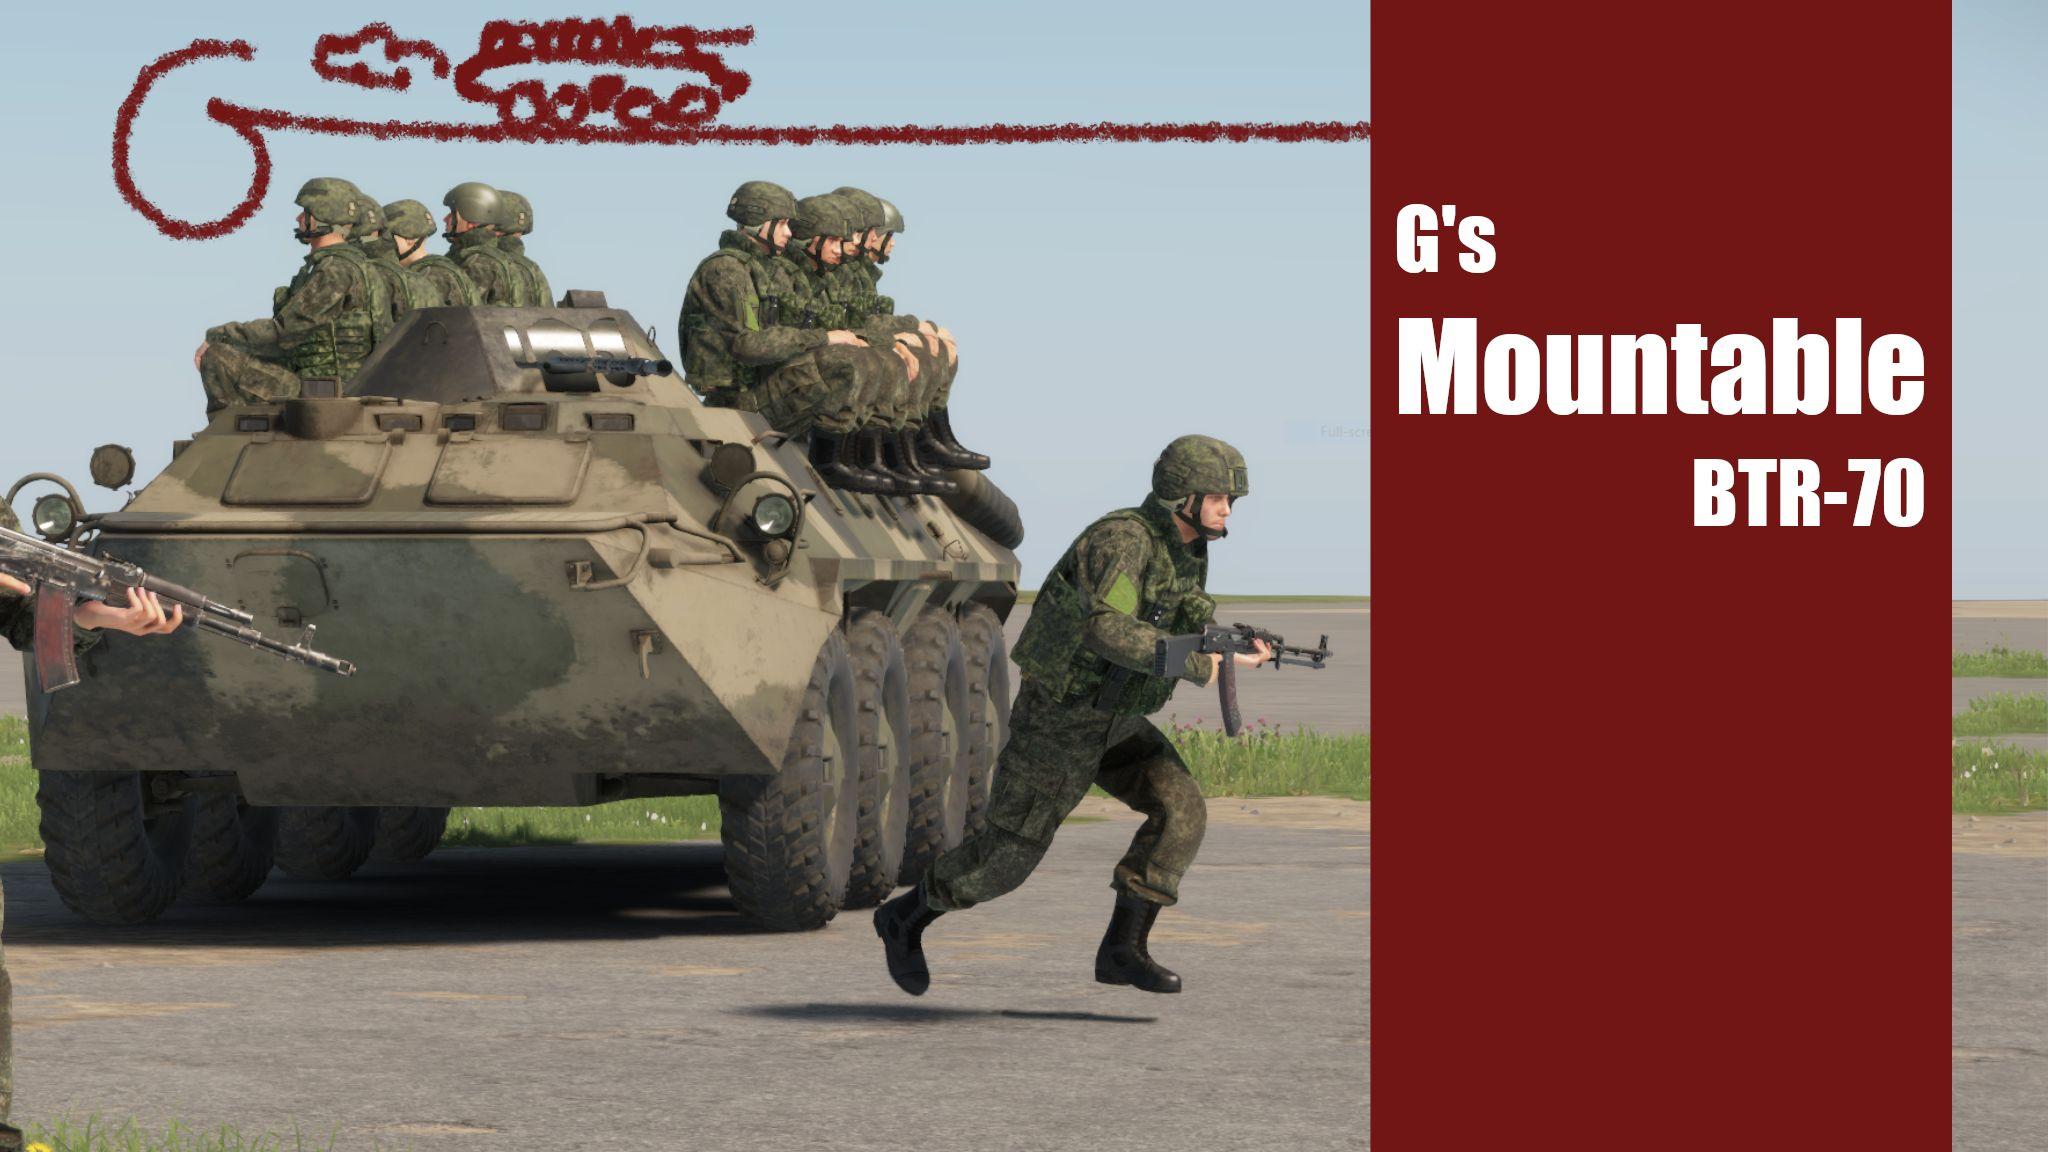 Gs Mountable BTR-70